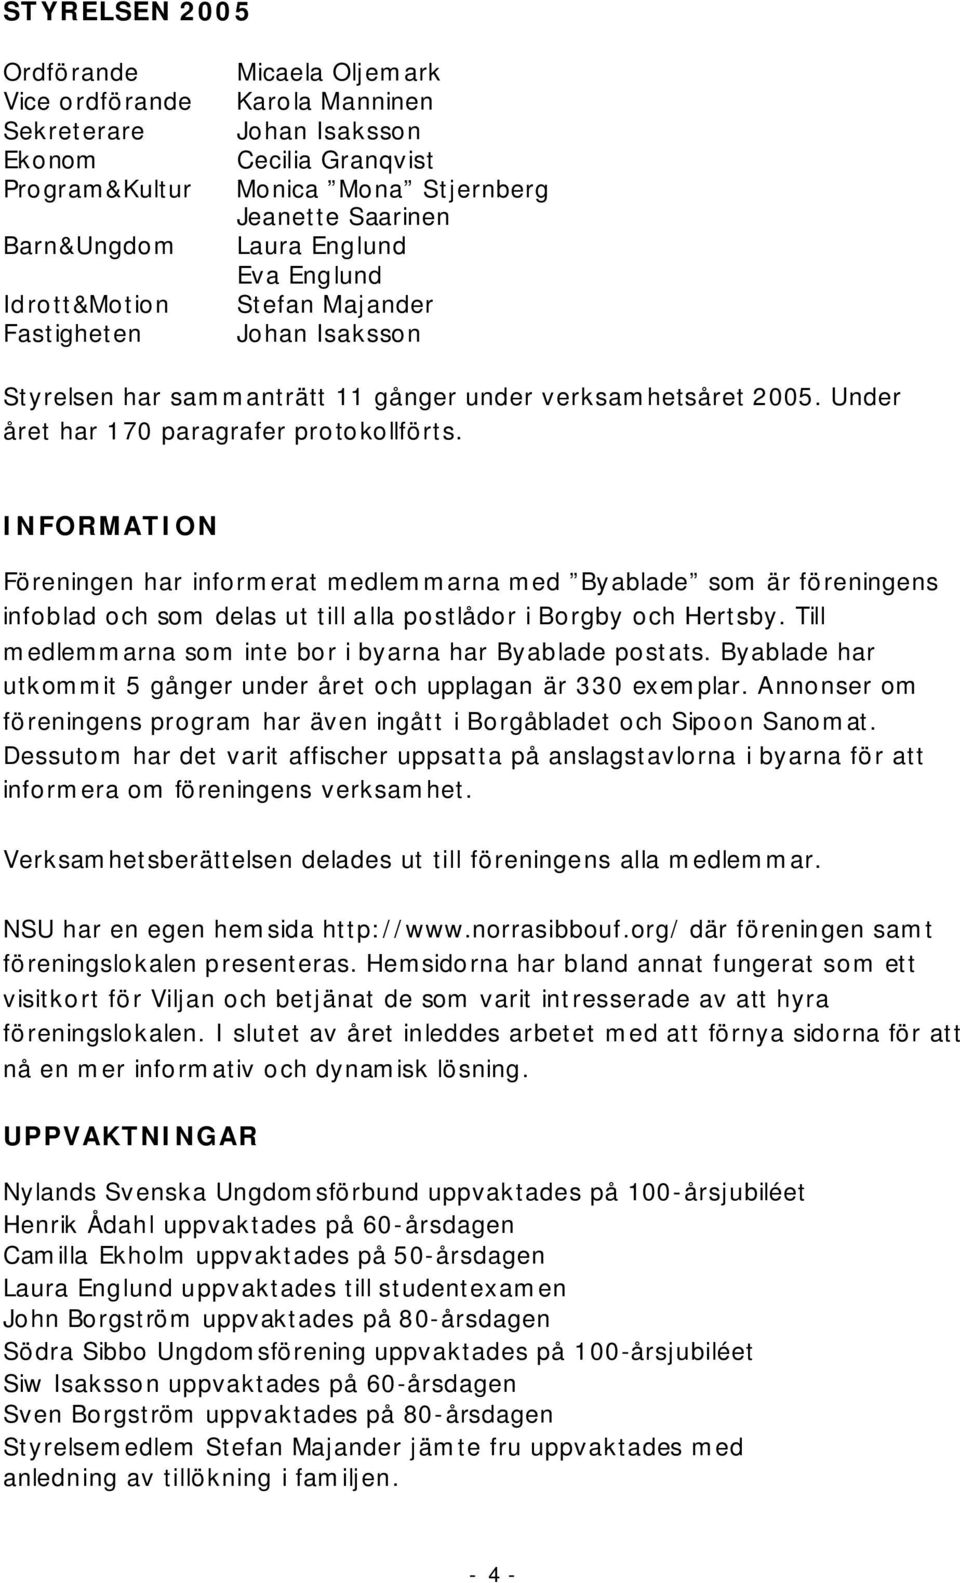 INFORMATION Föreningen har informerat medlemmarna med Byablade som är föreningens infoblad och som delas ut till alla postlådor i Borgby och Hertsby.